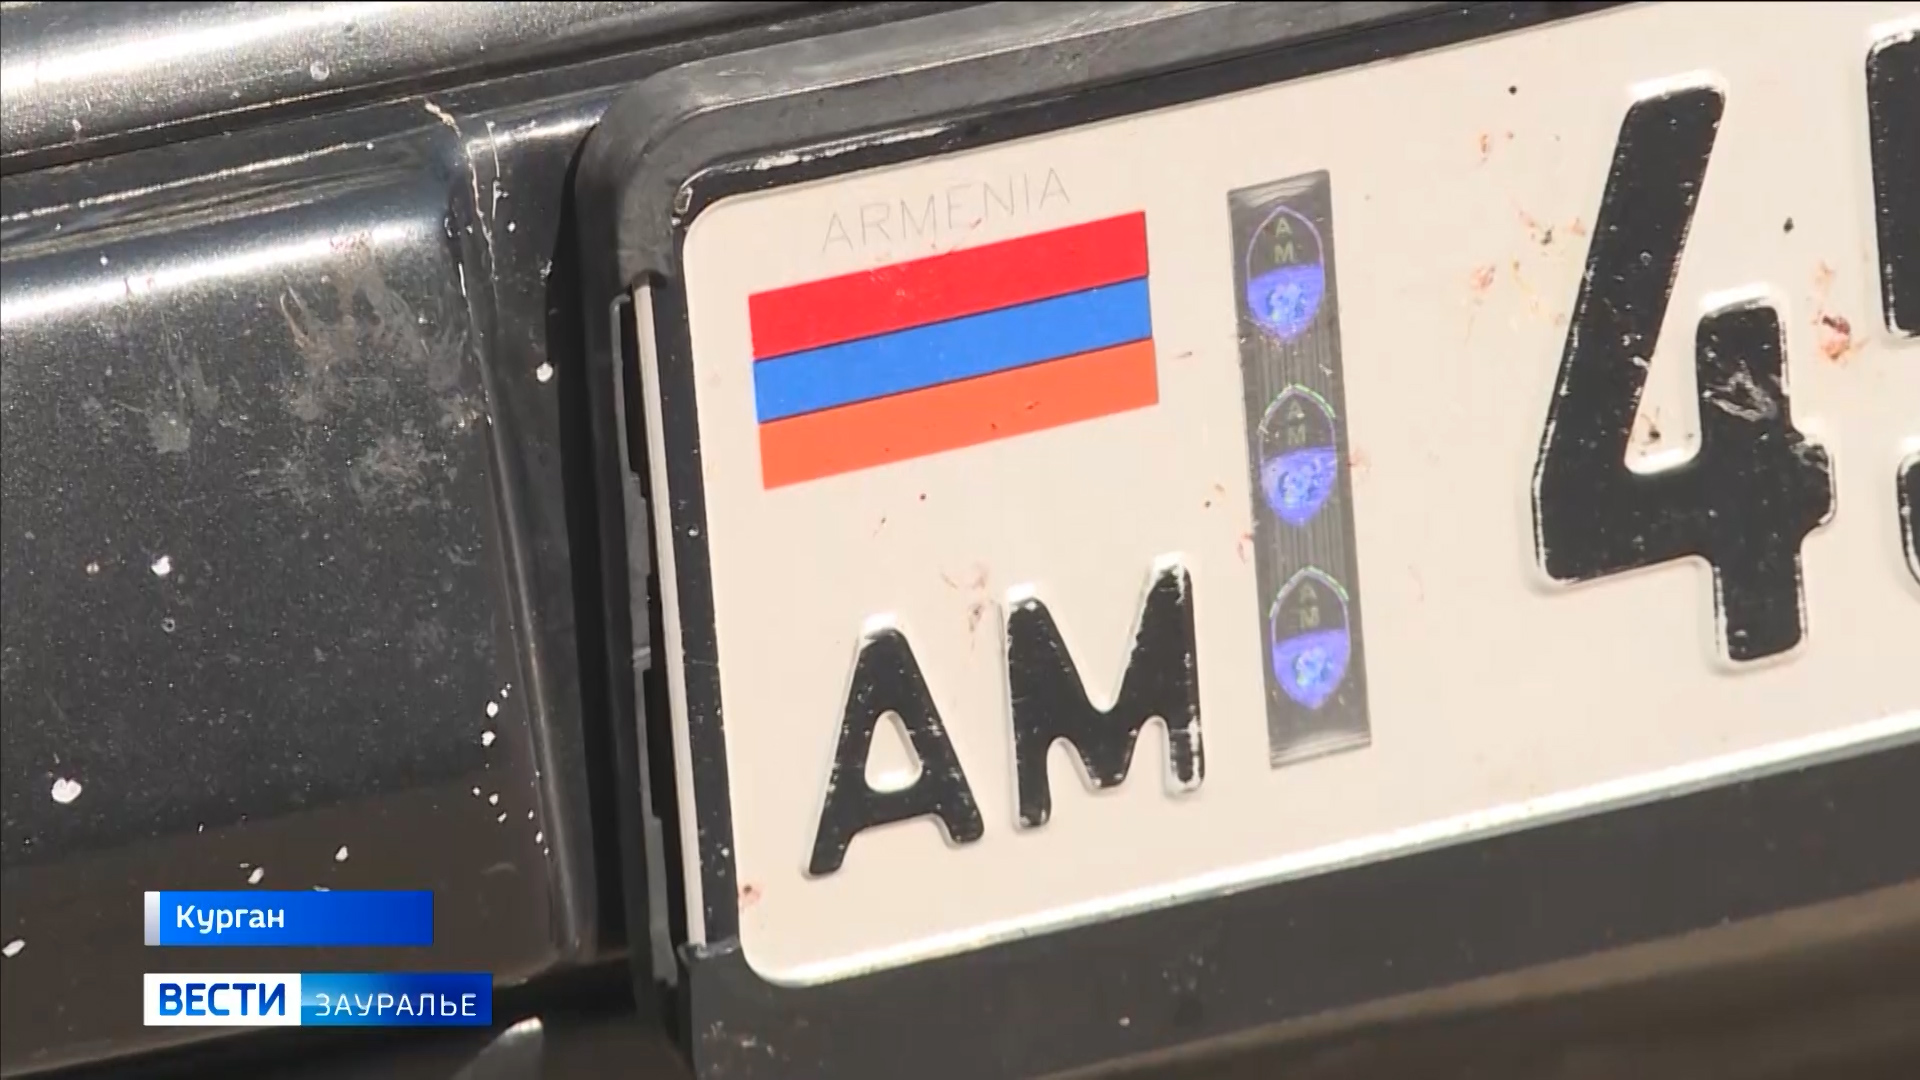 Номера арм. Армения номера машин. Номера Армении на авто. Армянские номера автомобилей. Номерные знаки Армении.